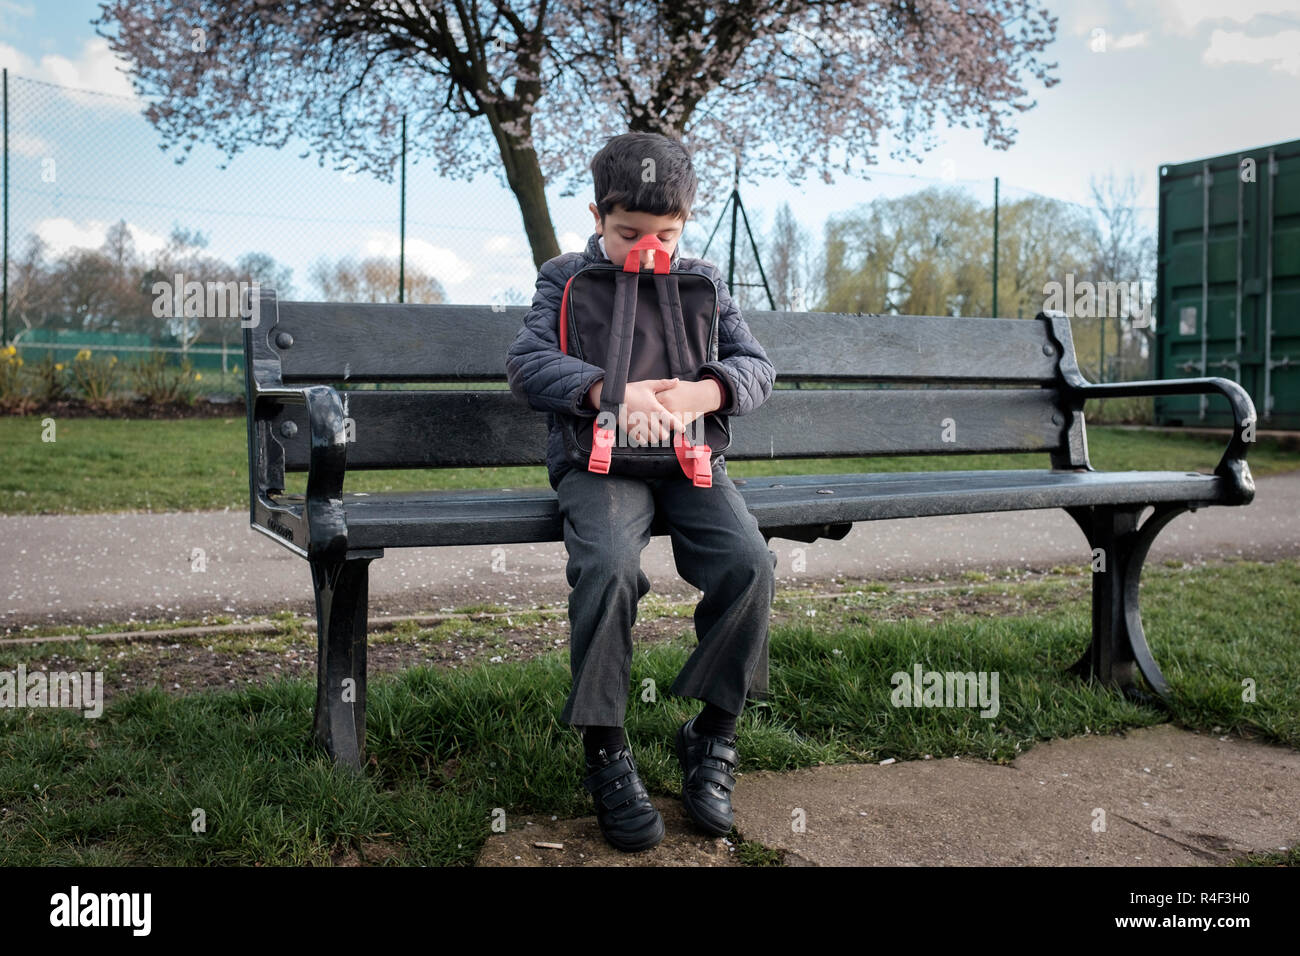 Reino Unido, niño sentado solo en una banca del parque, sintiéndose intimidado Foto de stock